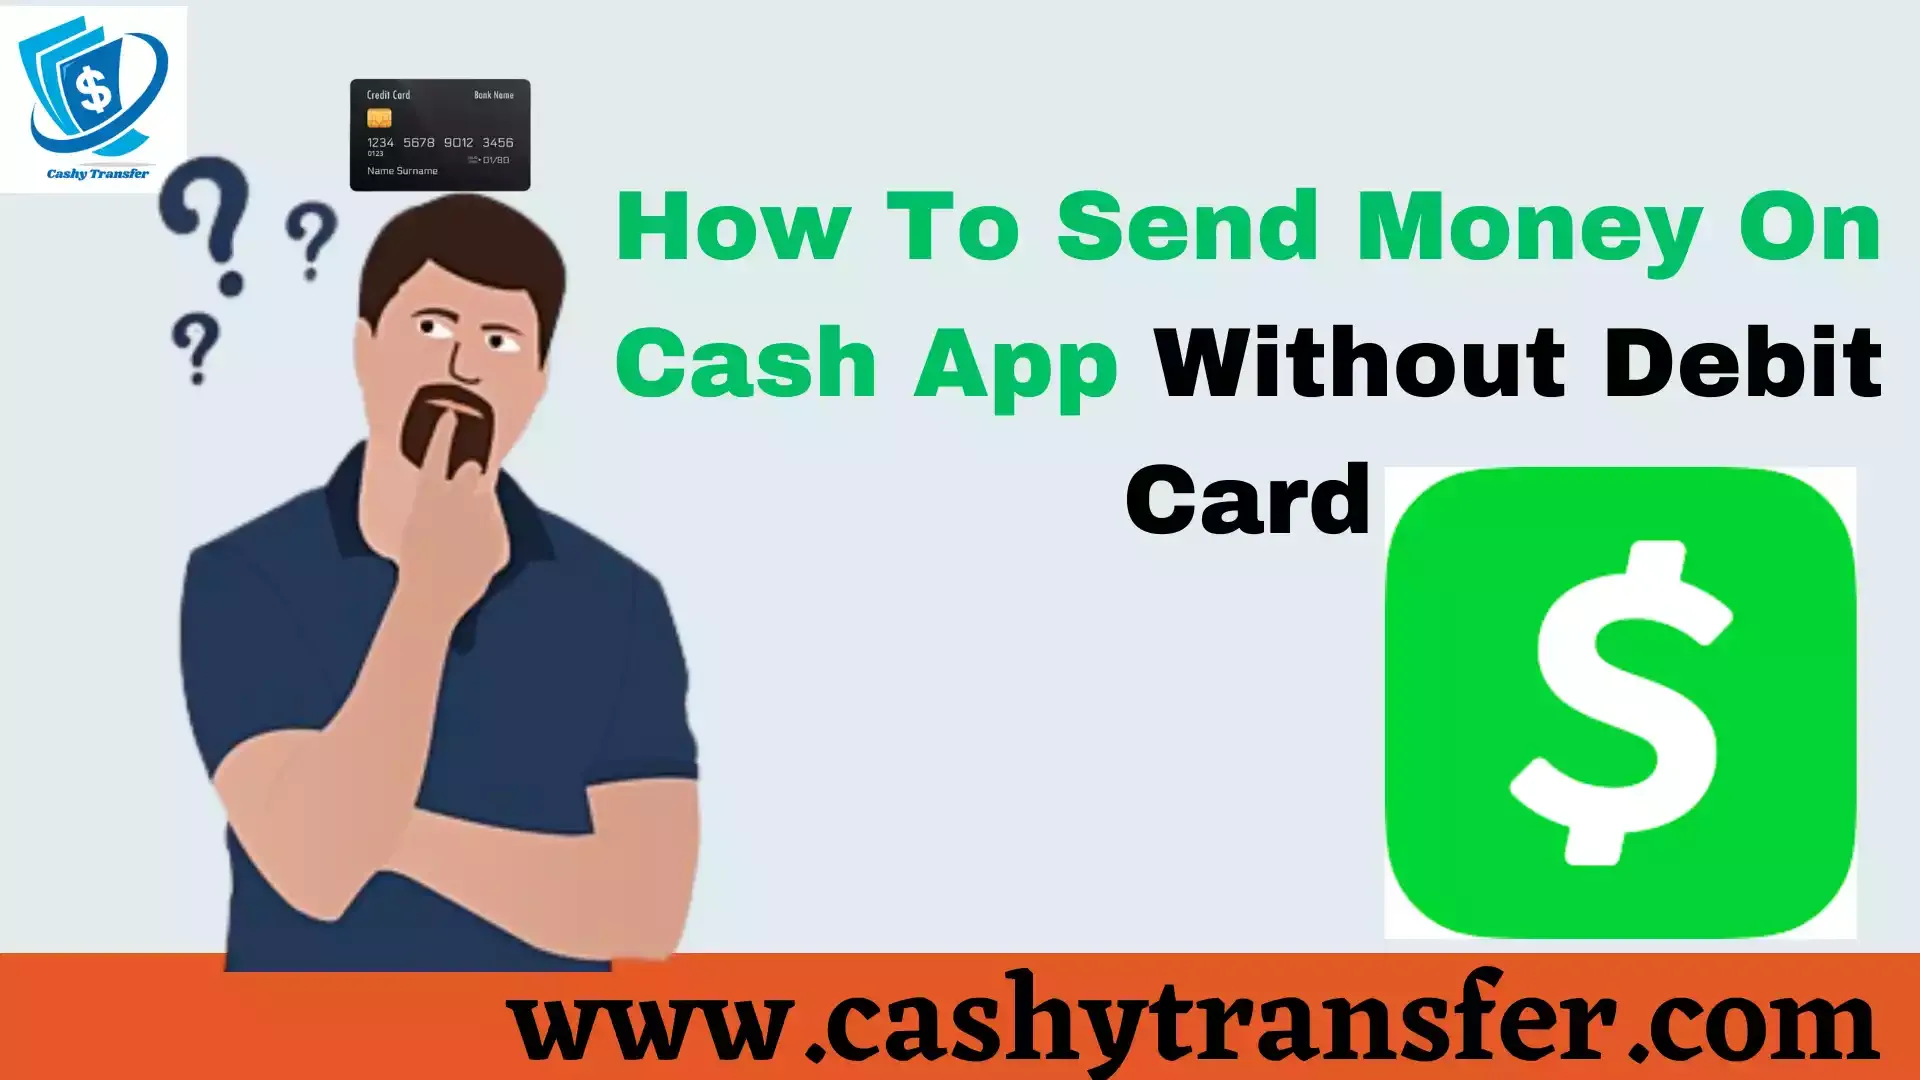 Send Money On Cash App Without Debit Card